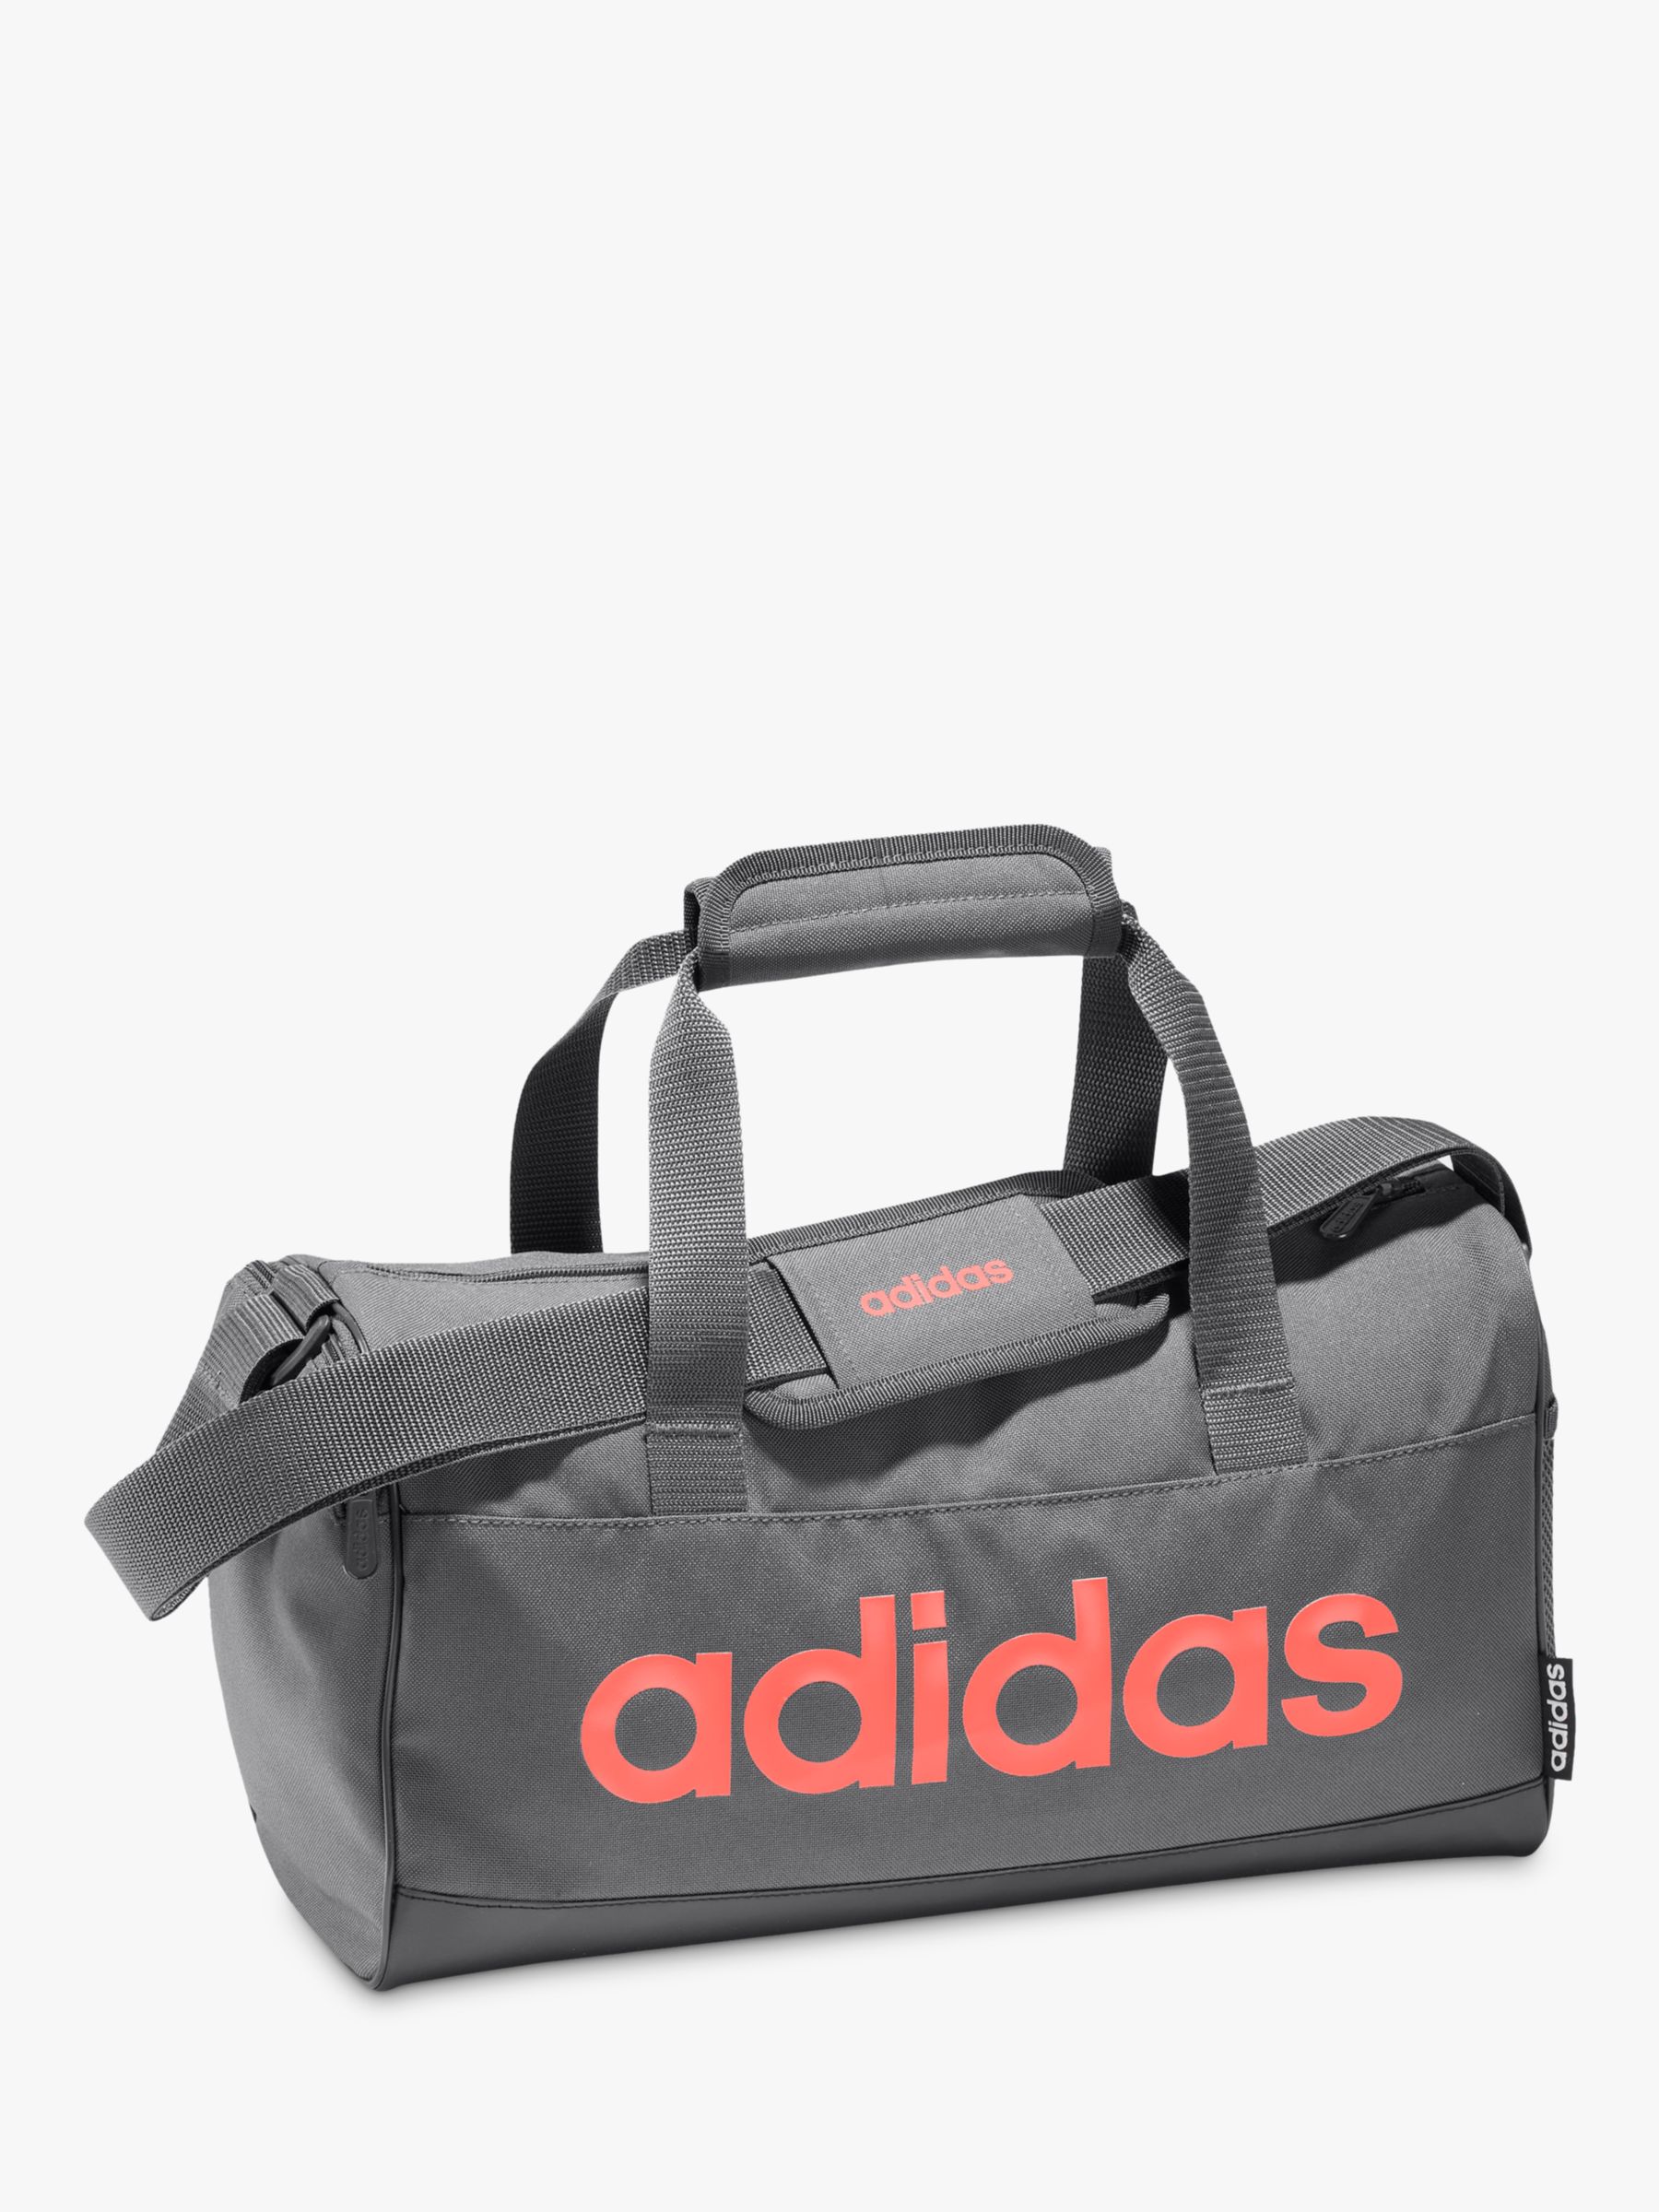 adidas gray bag